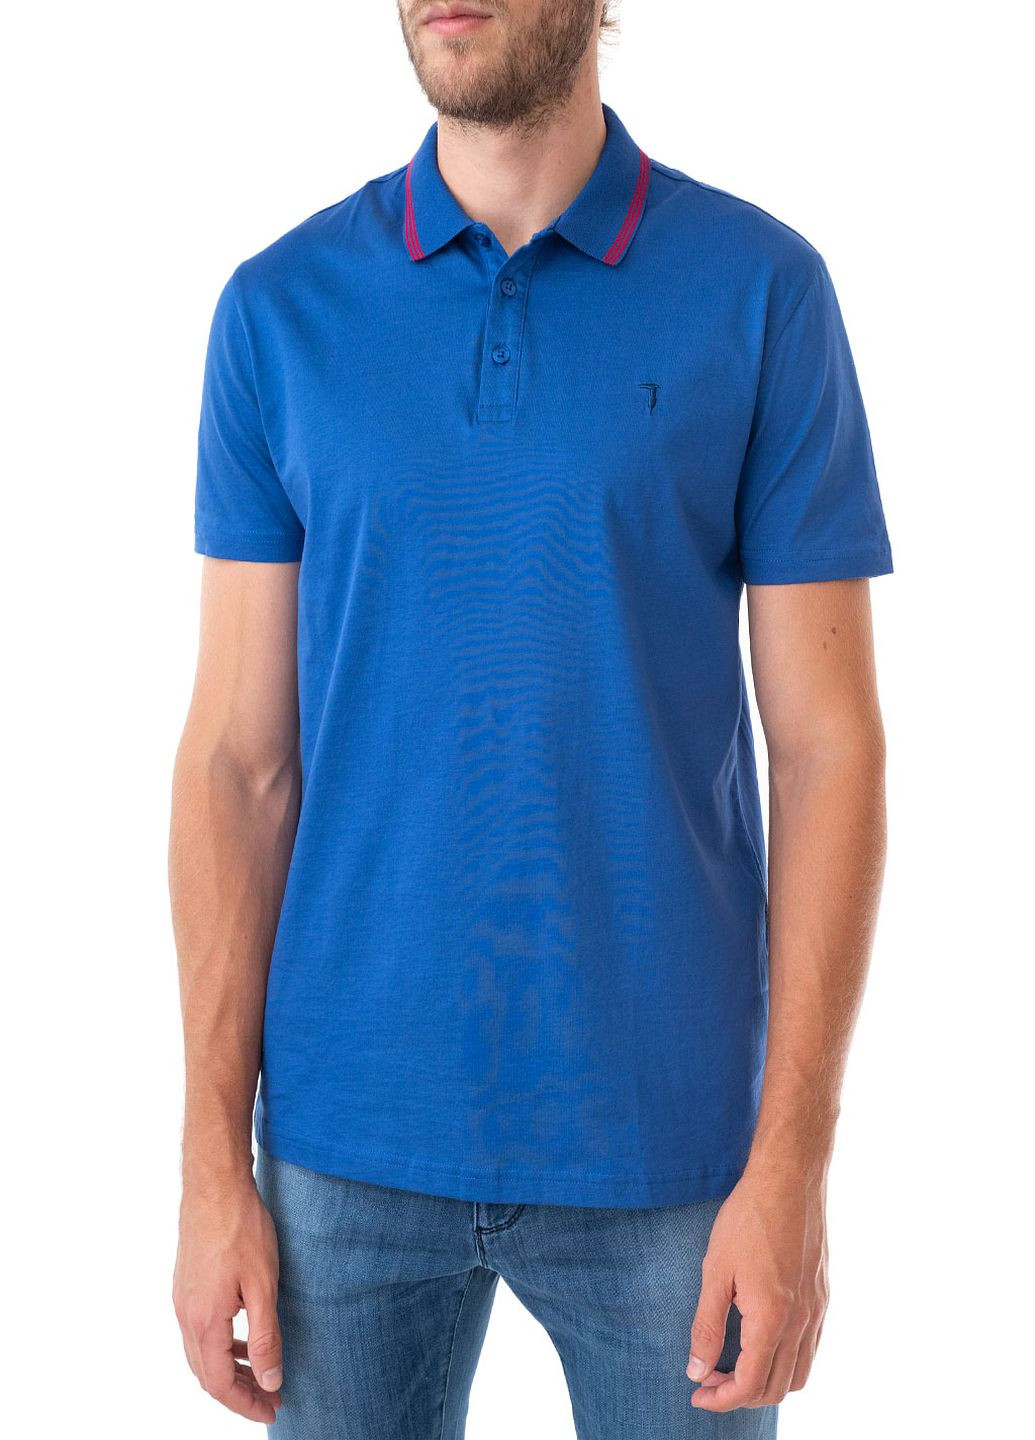 Синяя футболка-поло для мужчин Trussardi Jeans однотонная